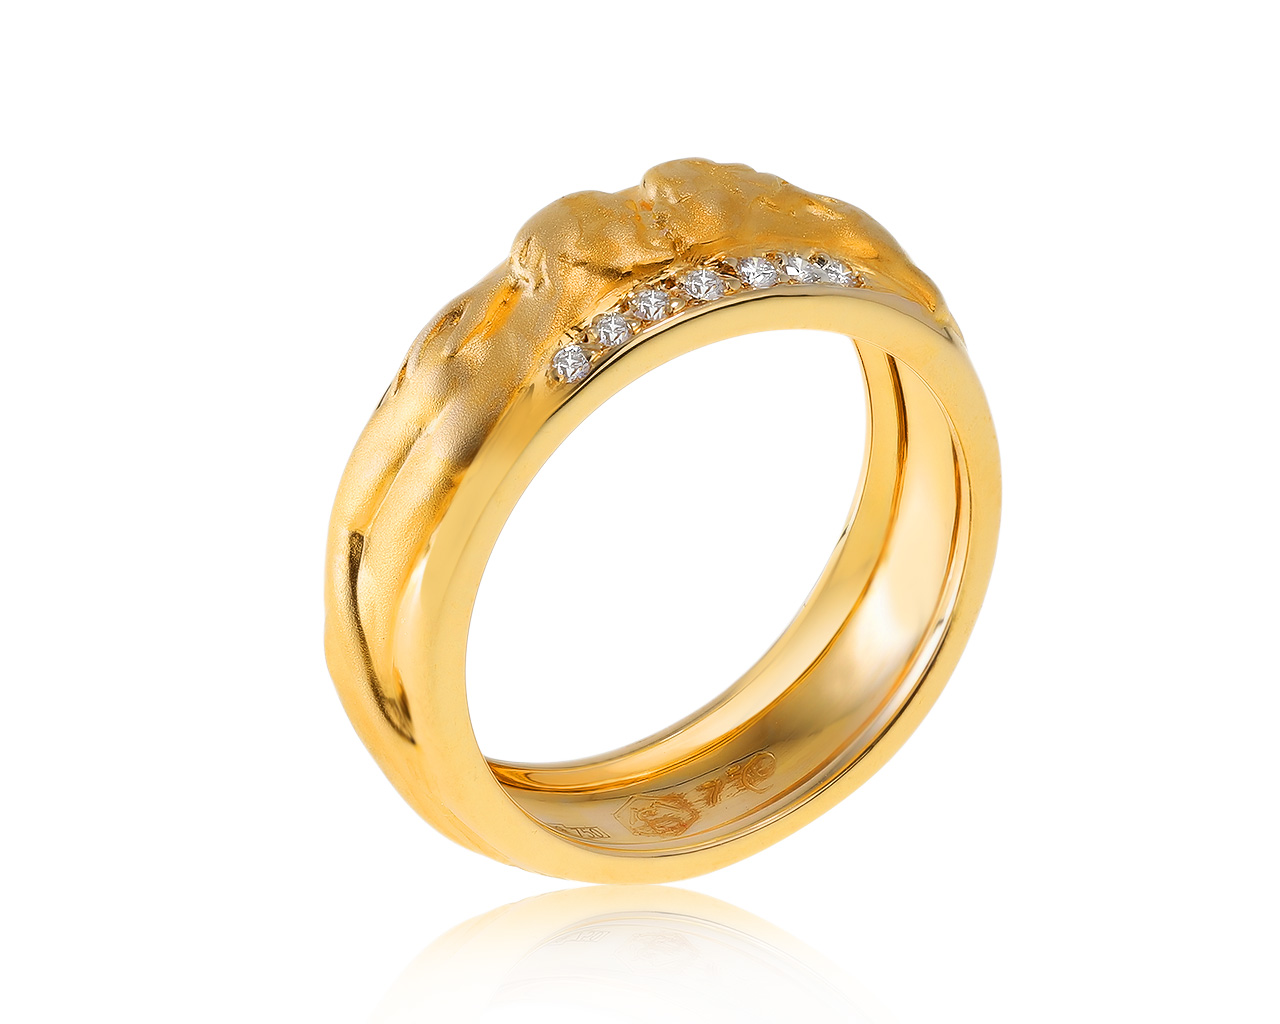 Оригинальное золотое кольцо с бриллиантами 0.08ct Carrera y Carrera Promesa